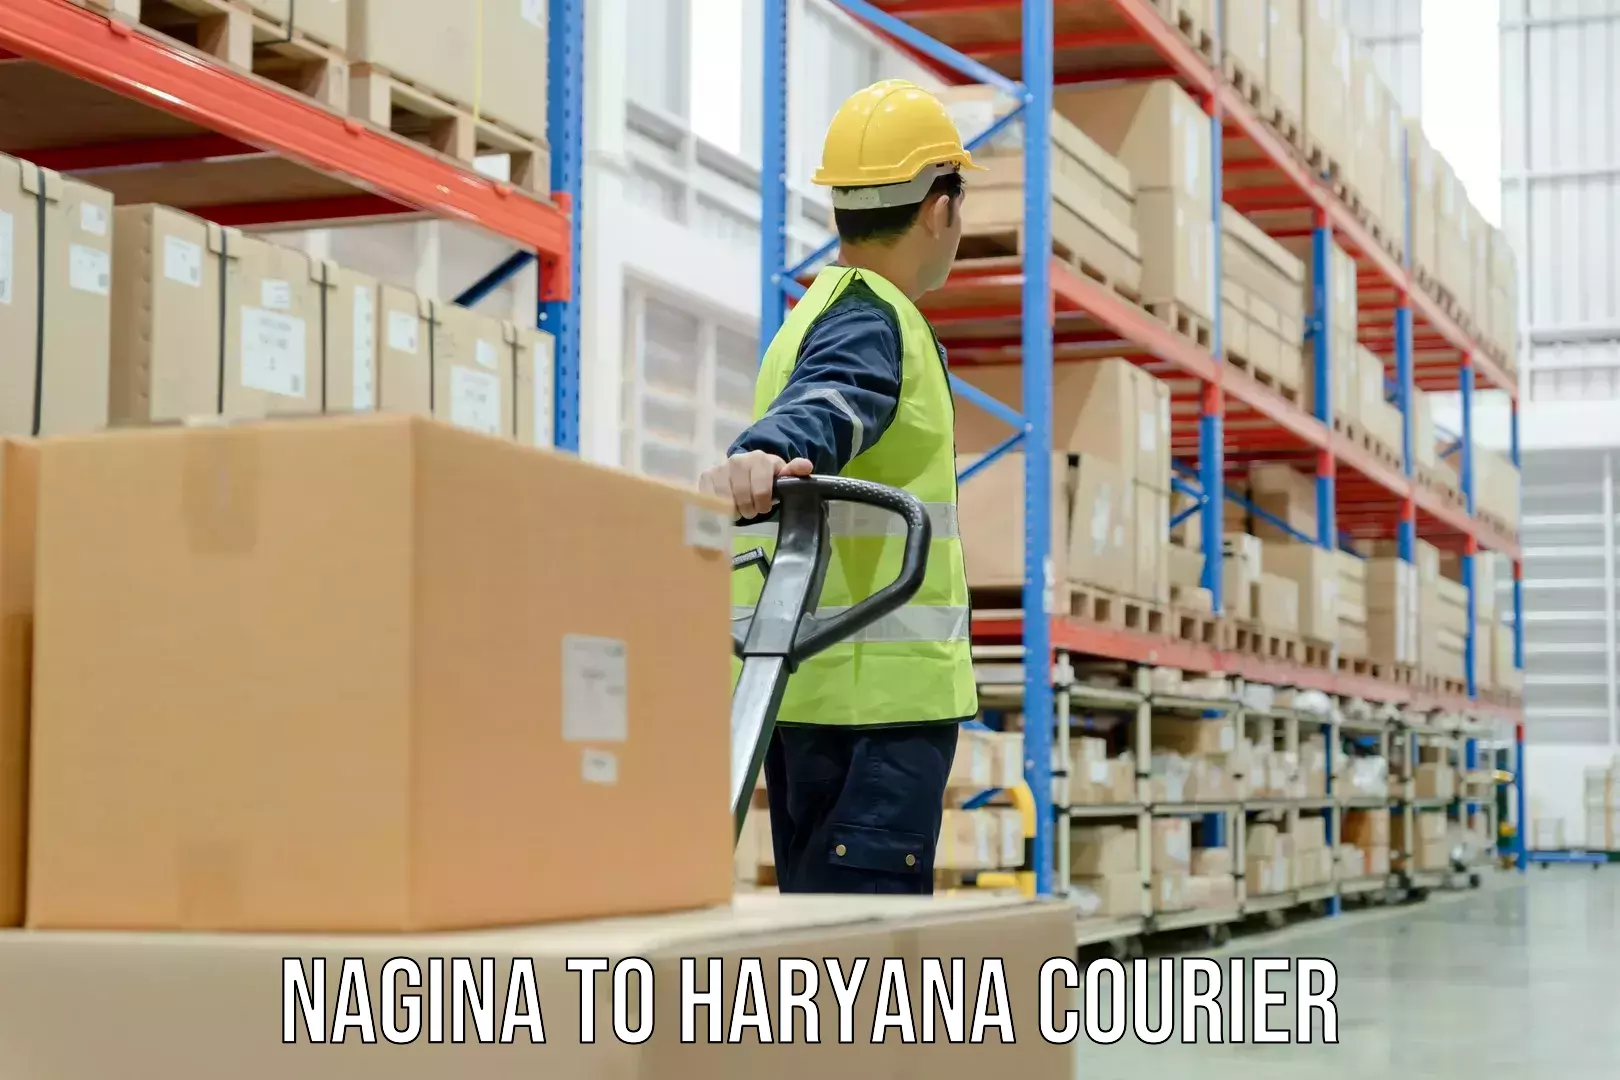 Courier service comparison Nagina to Pataudi